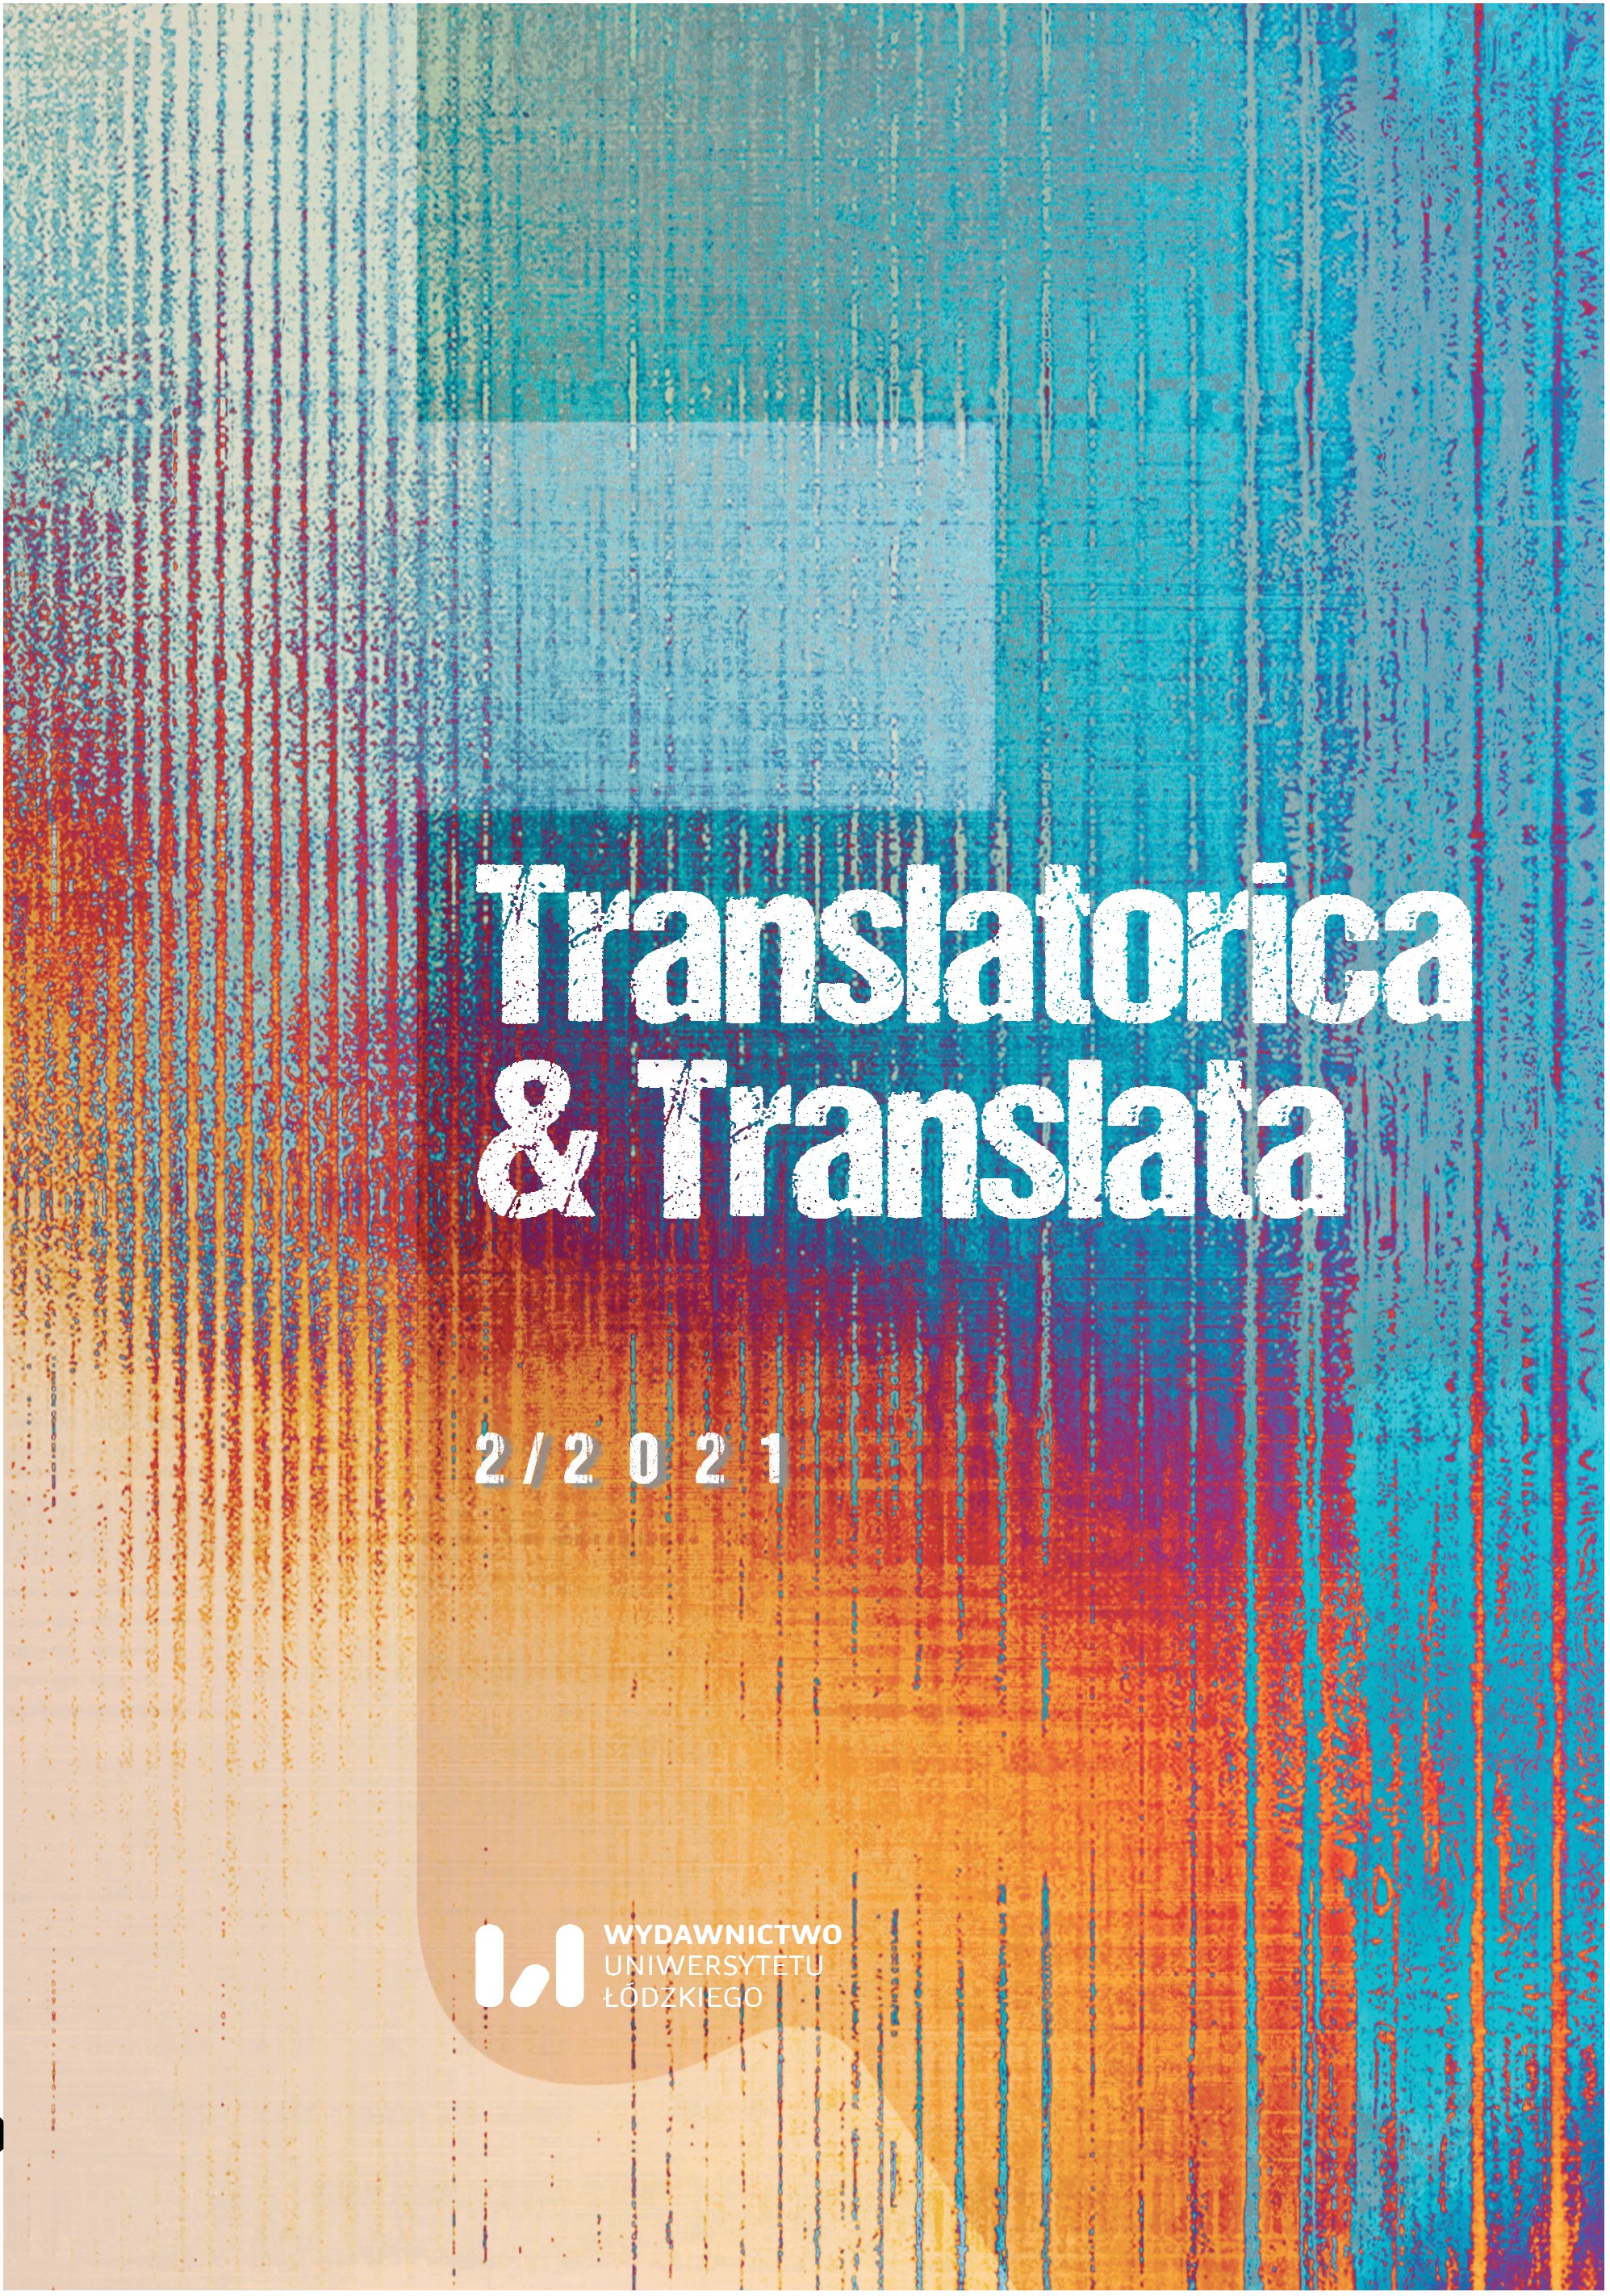 (In)traducibilità di testi letterari. I nomi dei personaggi nel dramma Obywatel męczennik di Tomasz Kaczmarek nella traduzione italiana